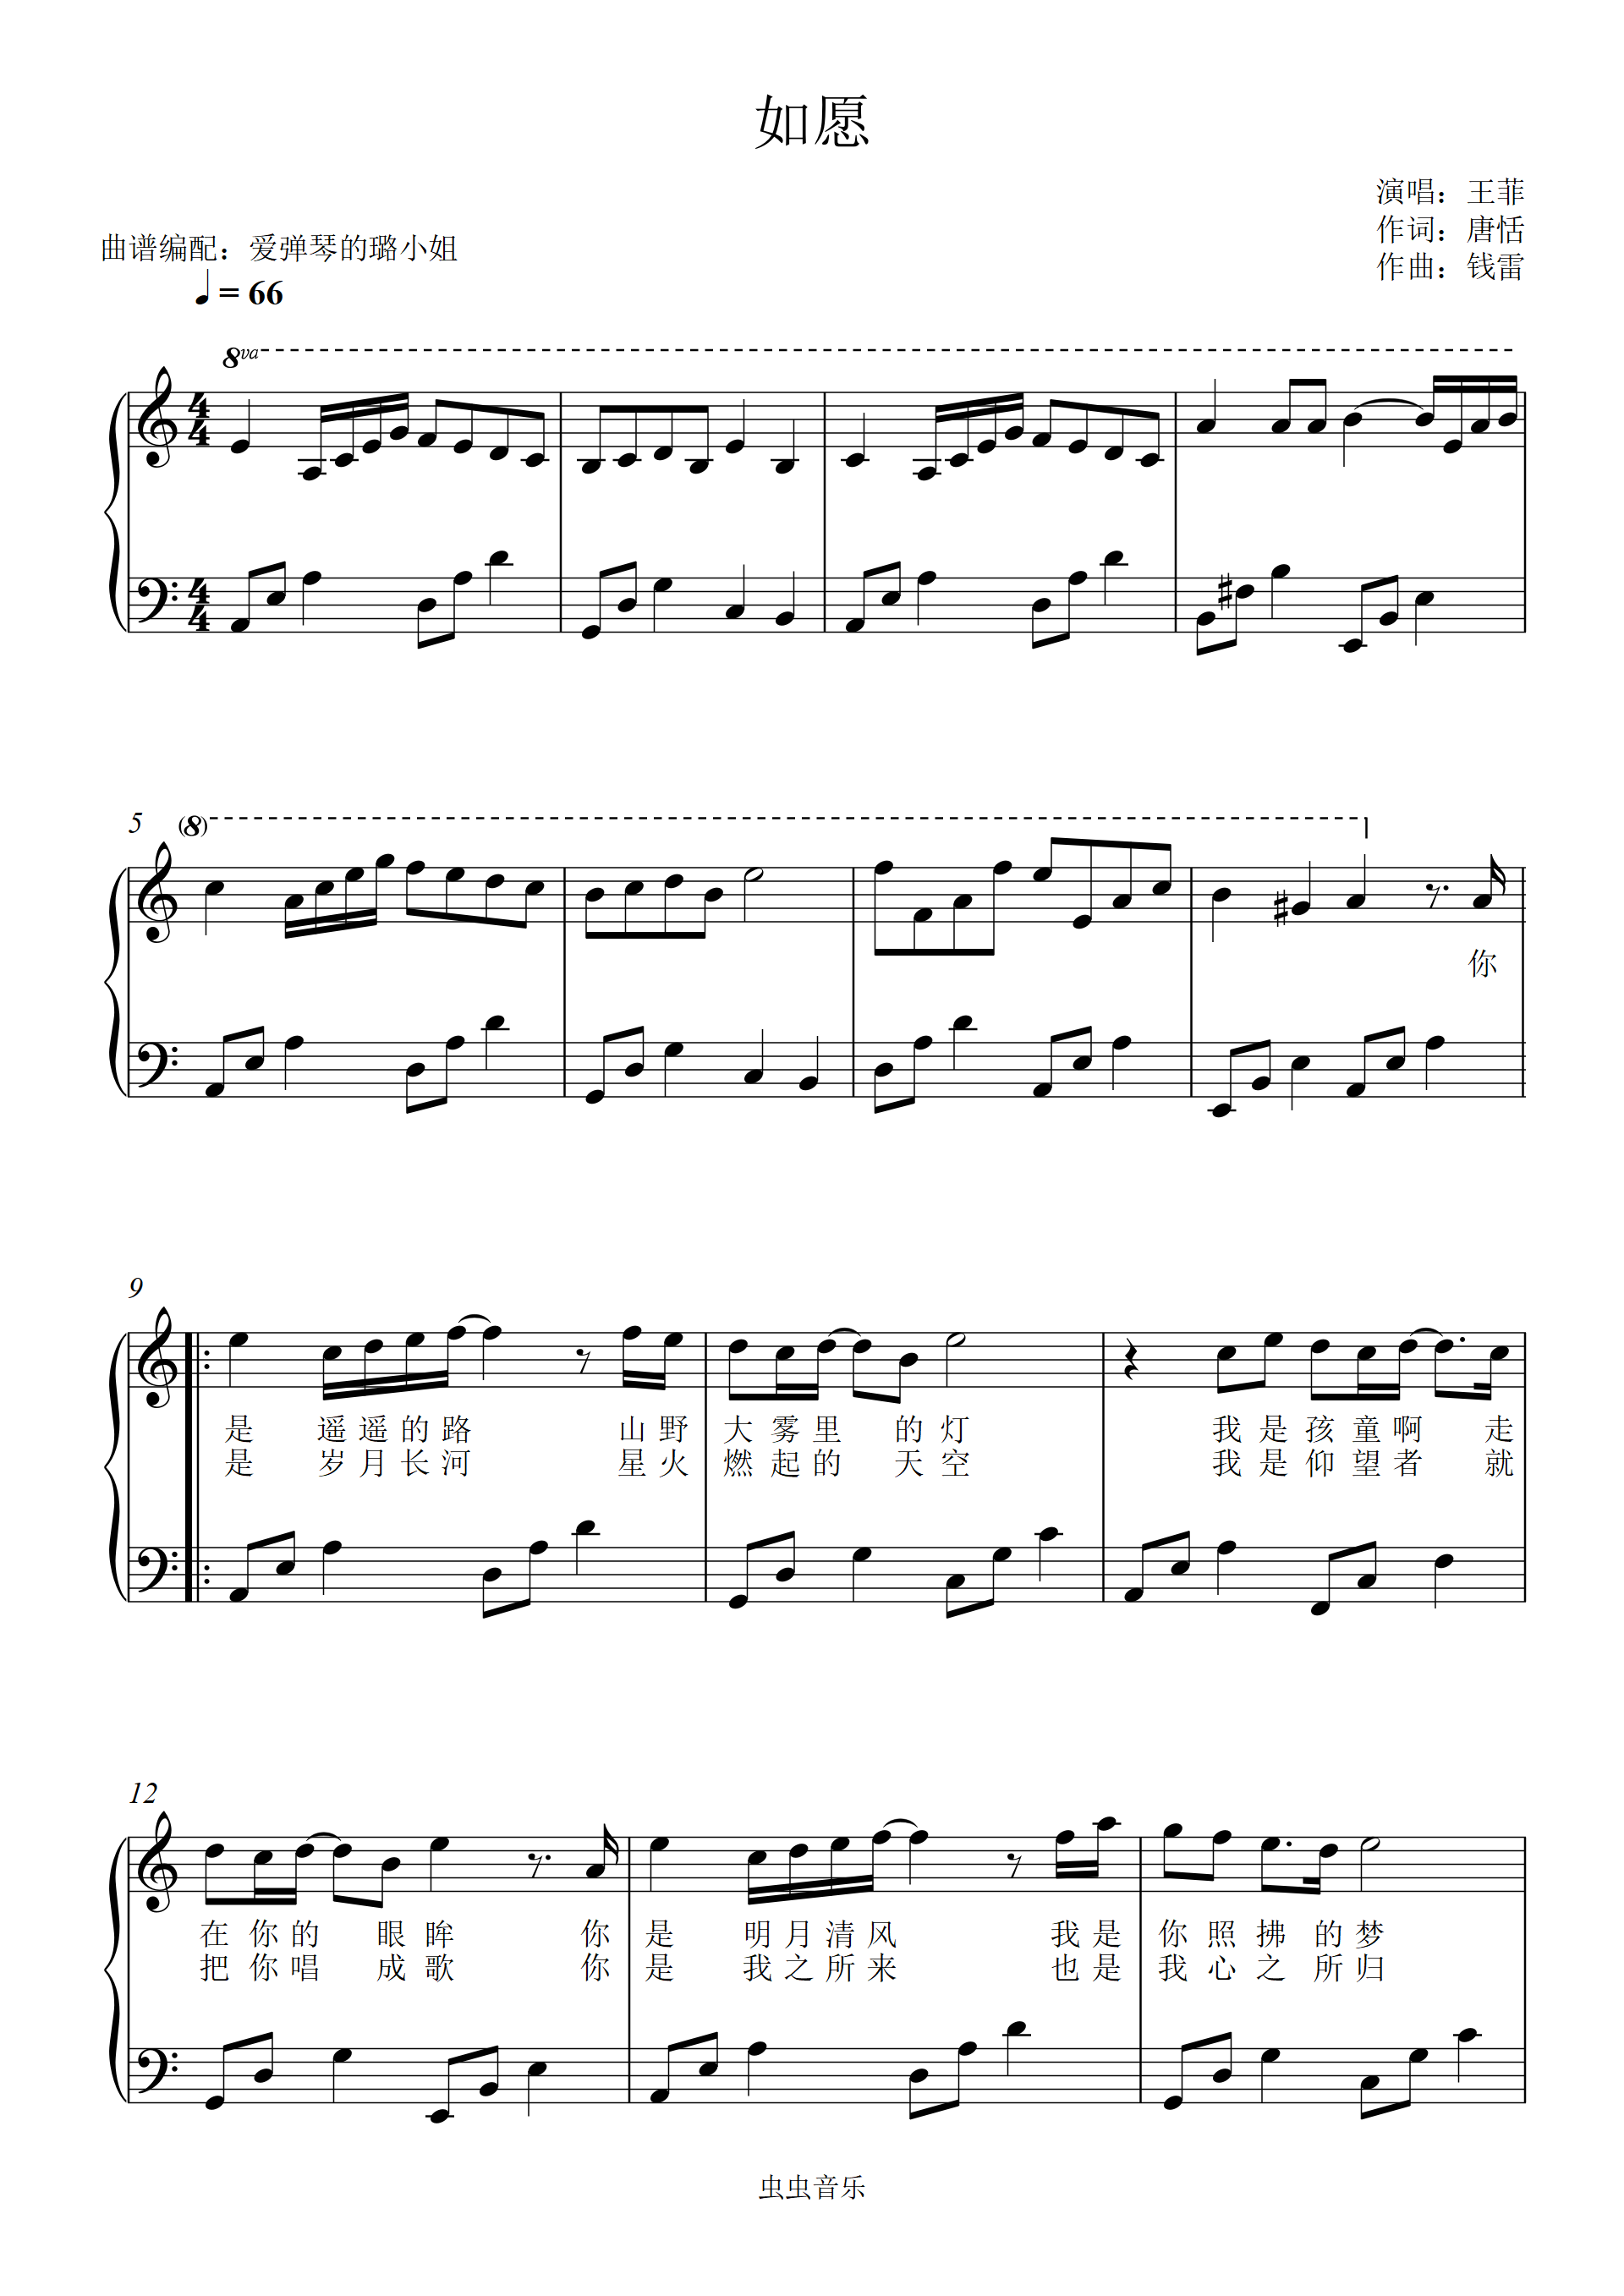 《卡农-,钢琴谱》简单和弦版,帕赫贝尔-Pachelbel|弹琴吧|钢琴谱|吉他谱|钢琴曲|乐谱|五线谱|高清免费下载|蛐蛐钢琴网